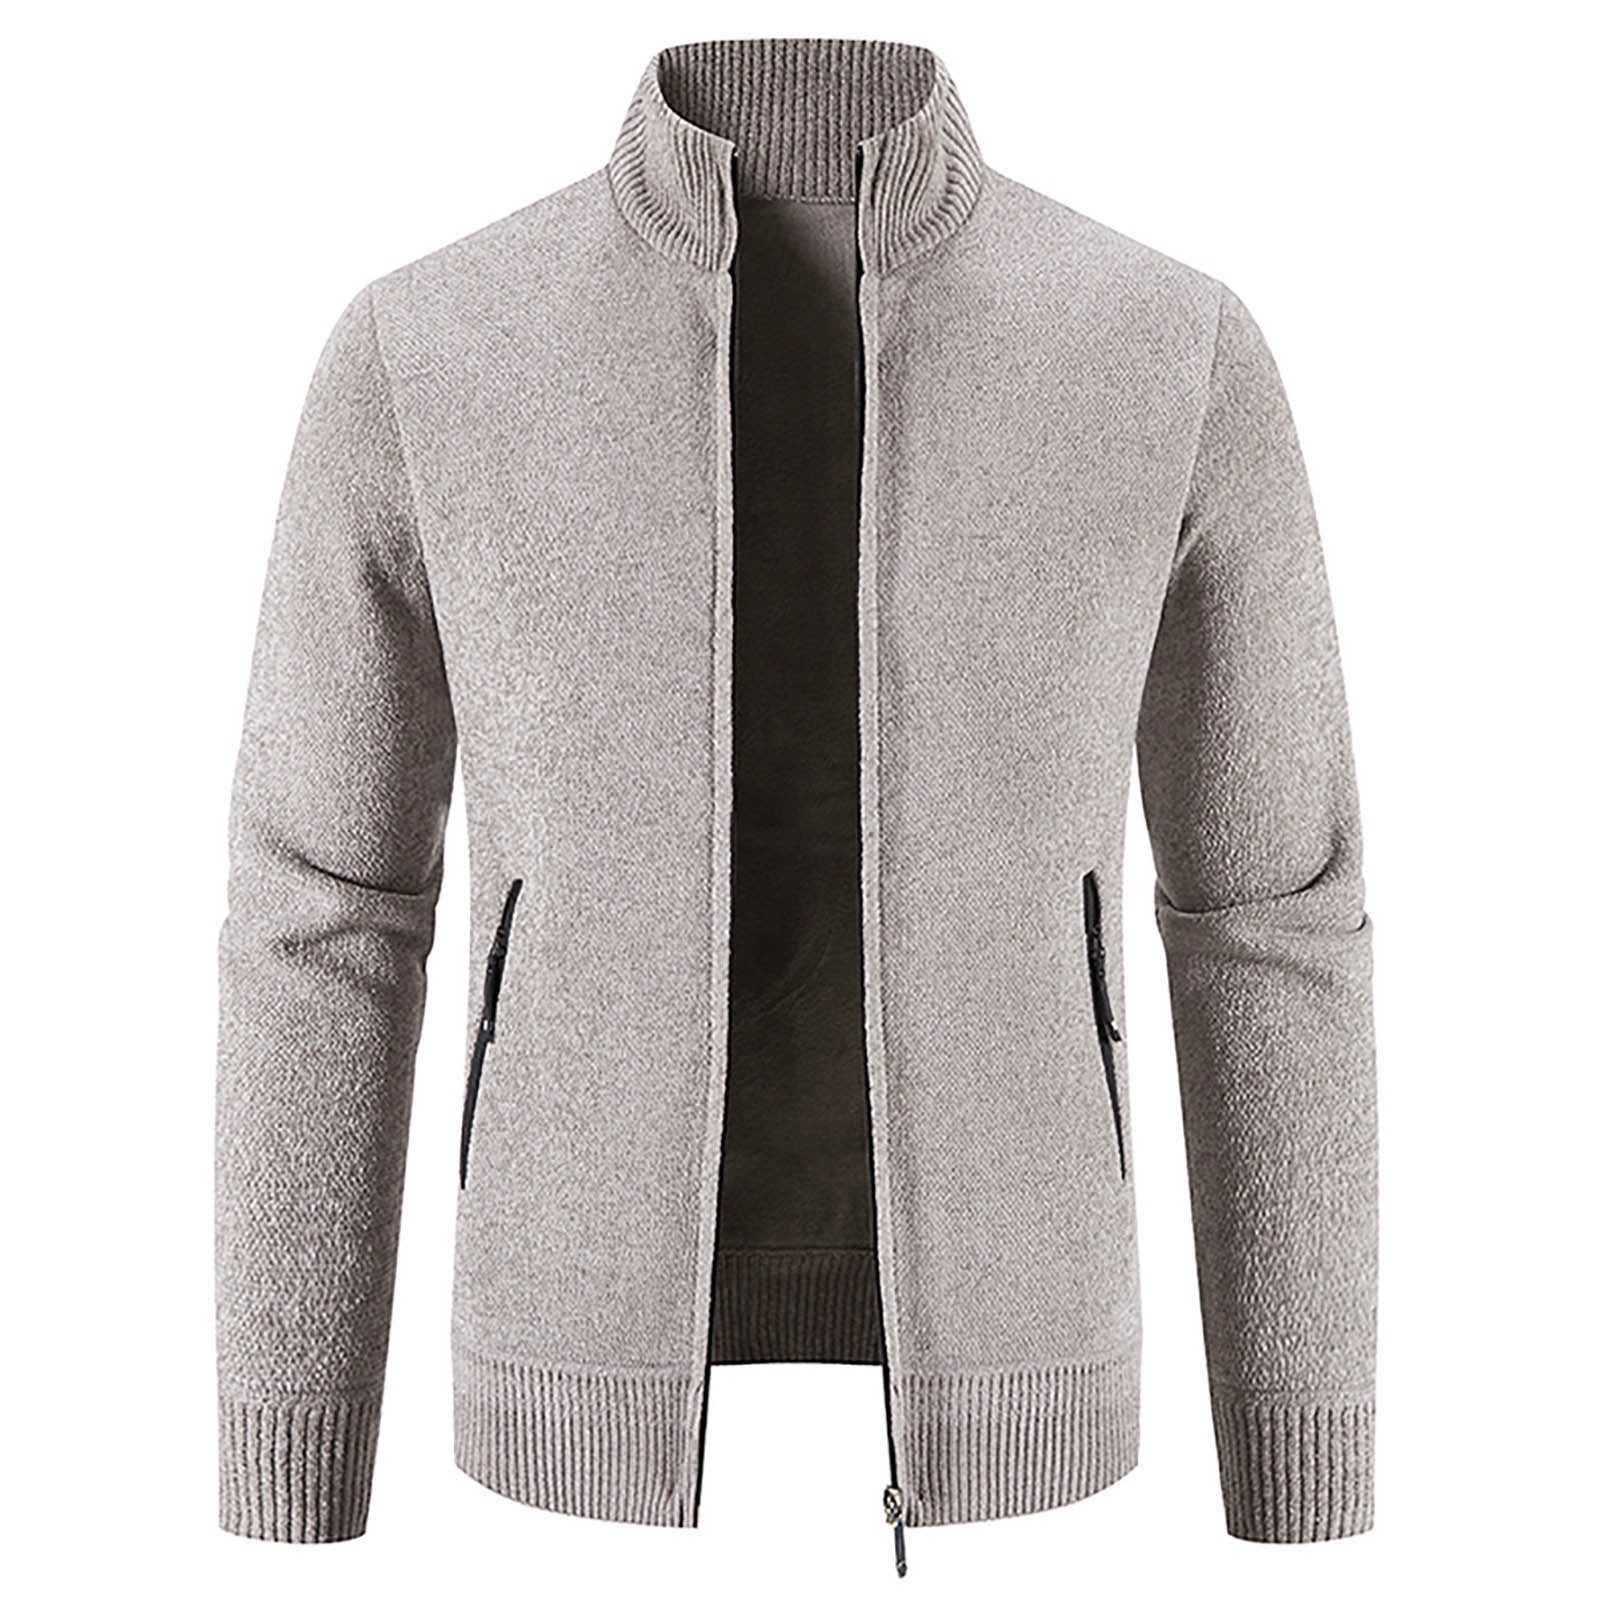 HTNBO Men's Fleece Zip Up Coats Fall Winter Stand Collar Knitted ...